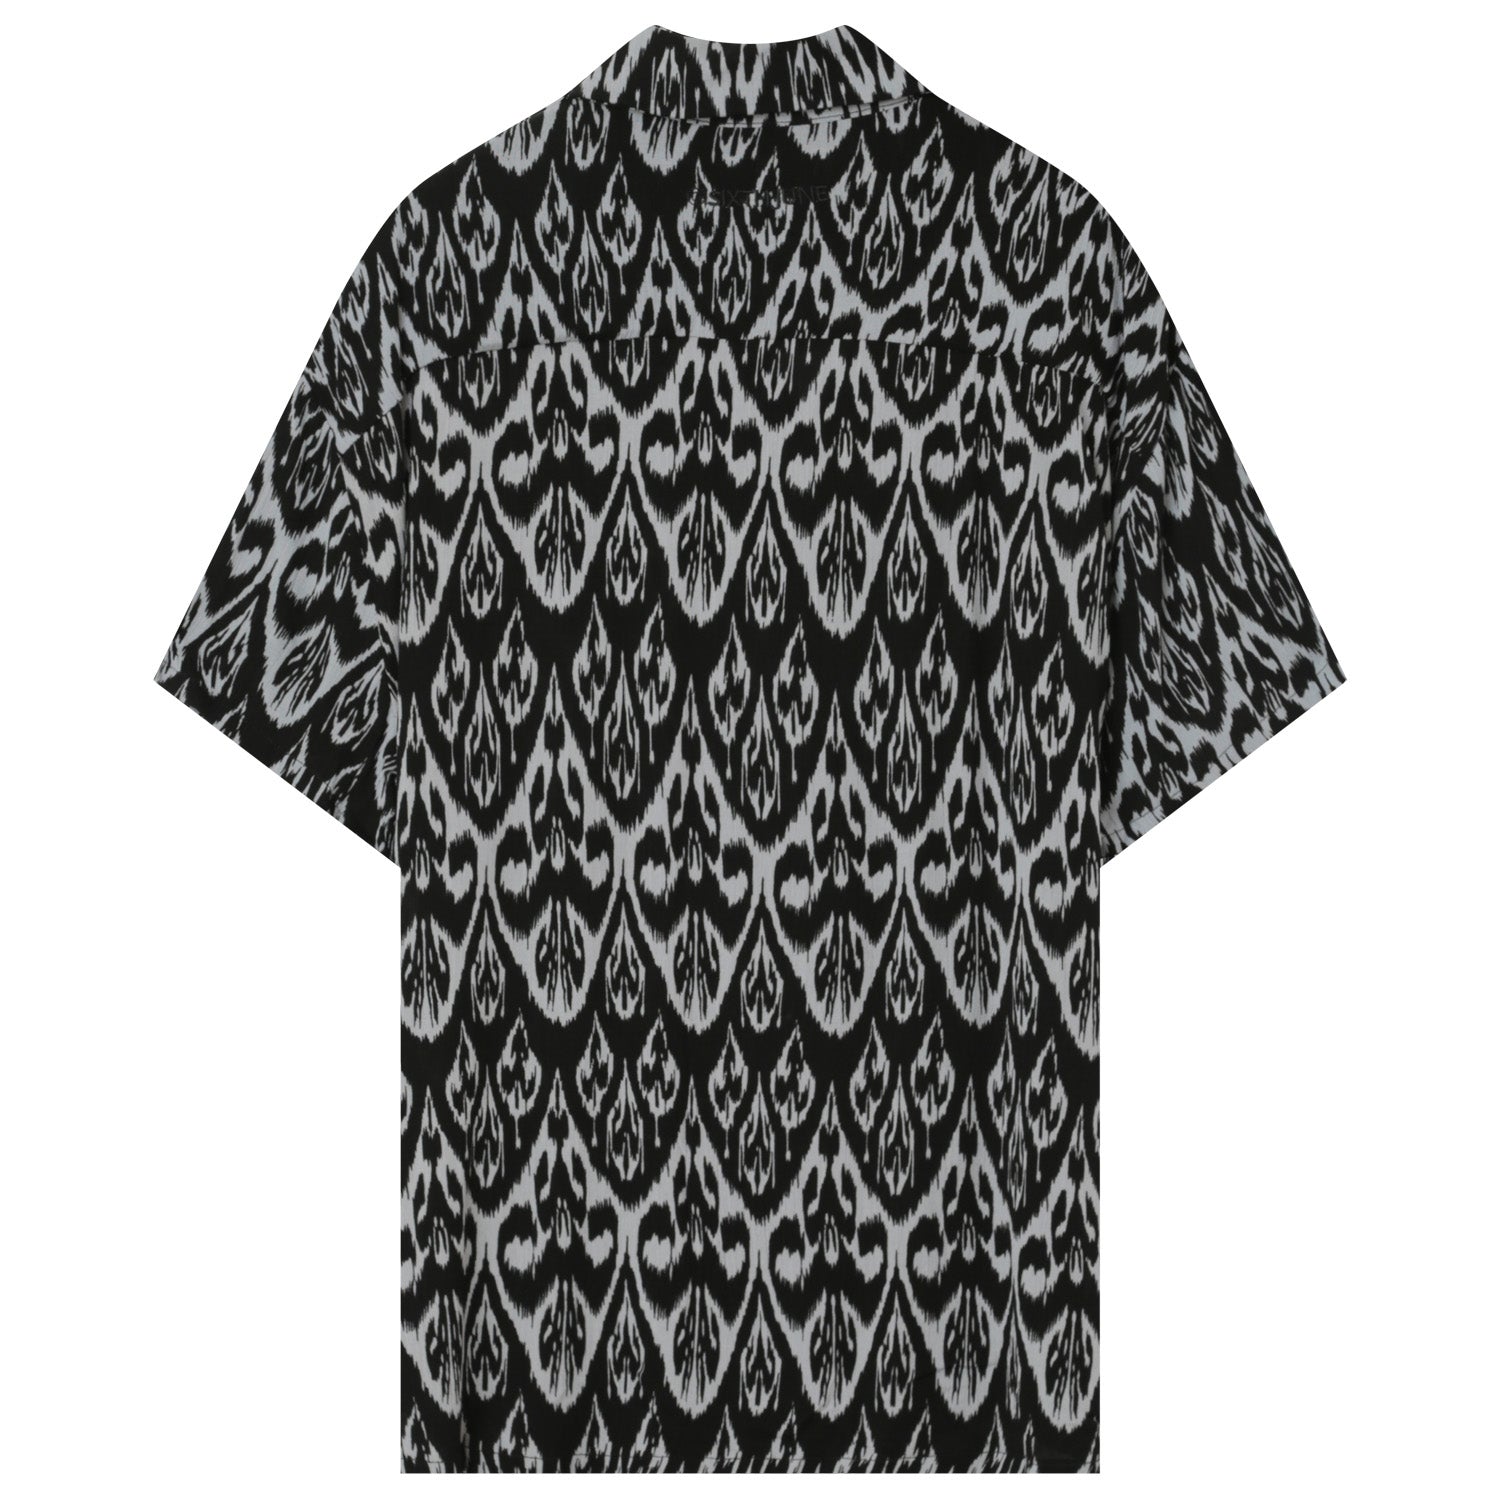 Aztec print Shirt 22889-TAUP